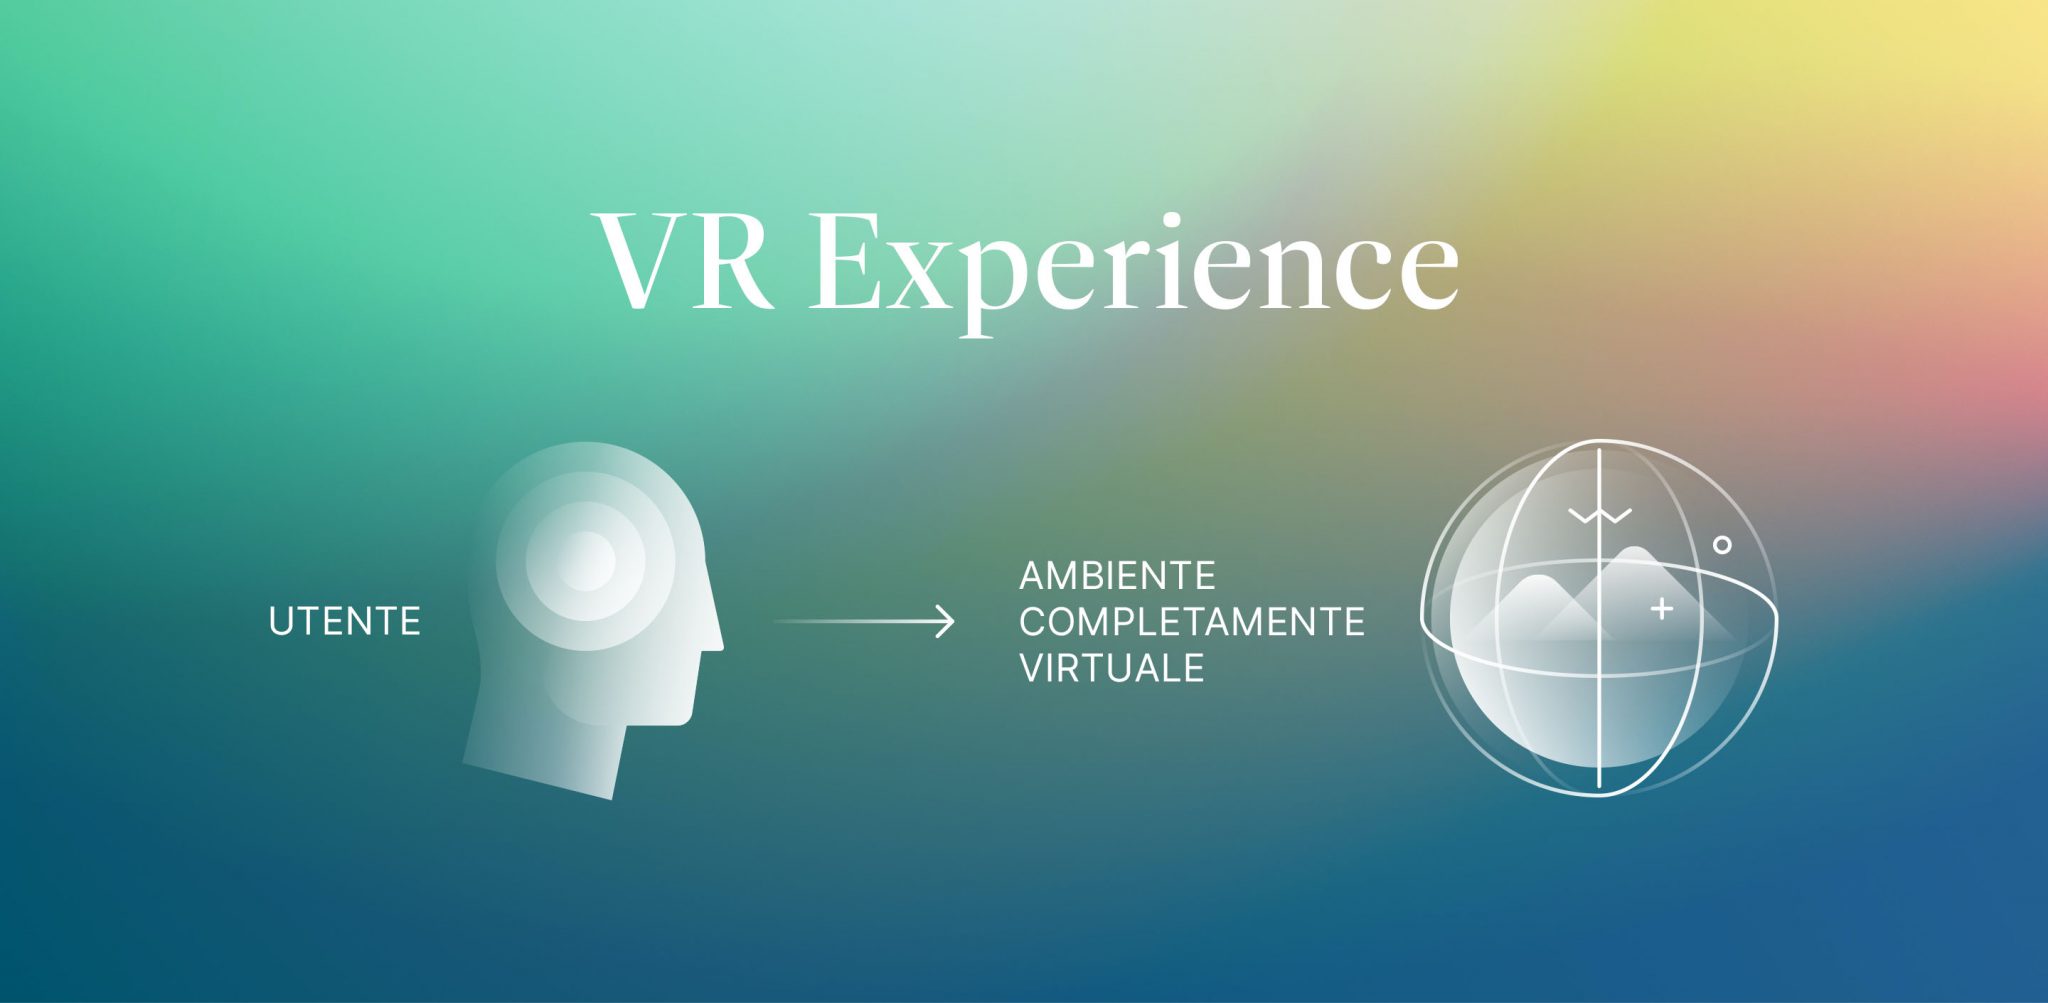 virtual reality experience KeyWe